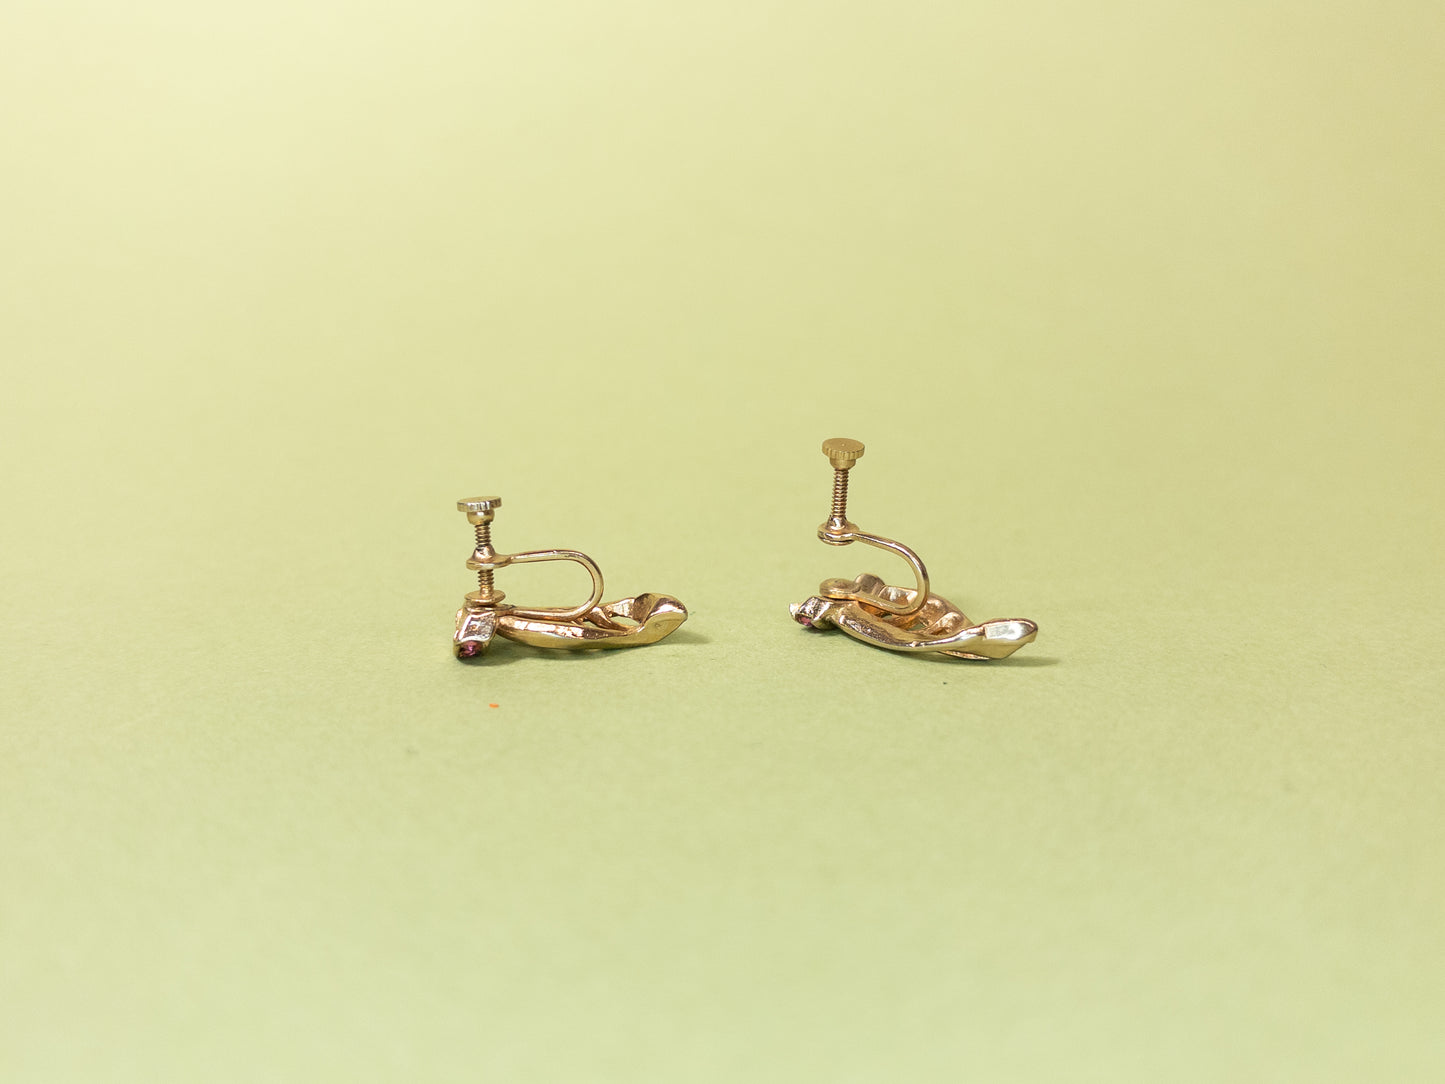 Vintage Gold Winged Pink Rhinestone Screwback Earrings